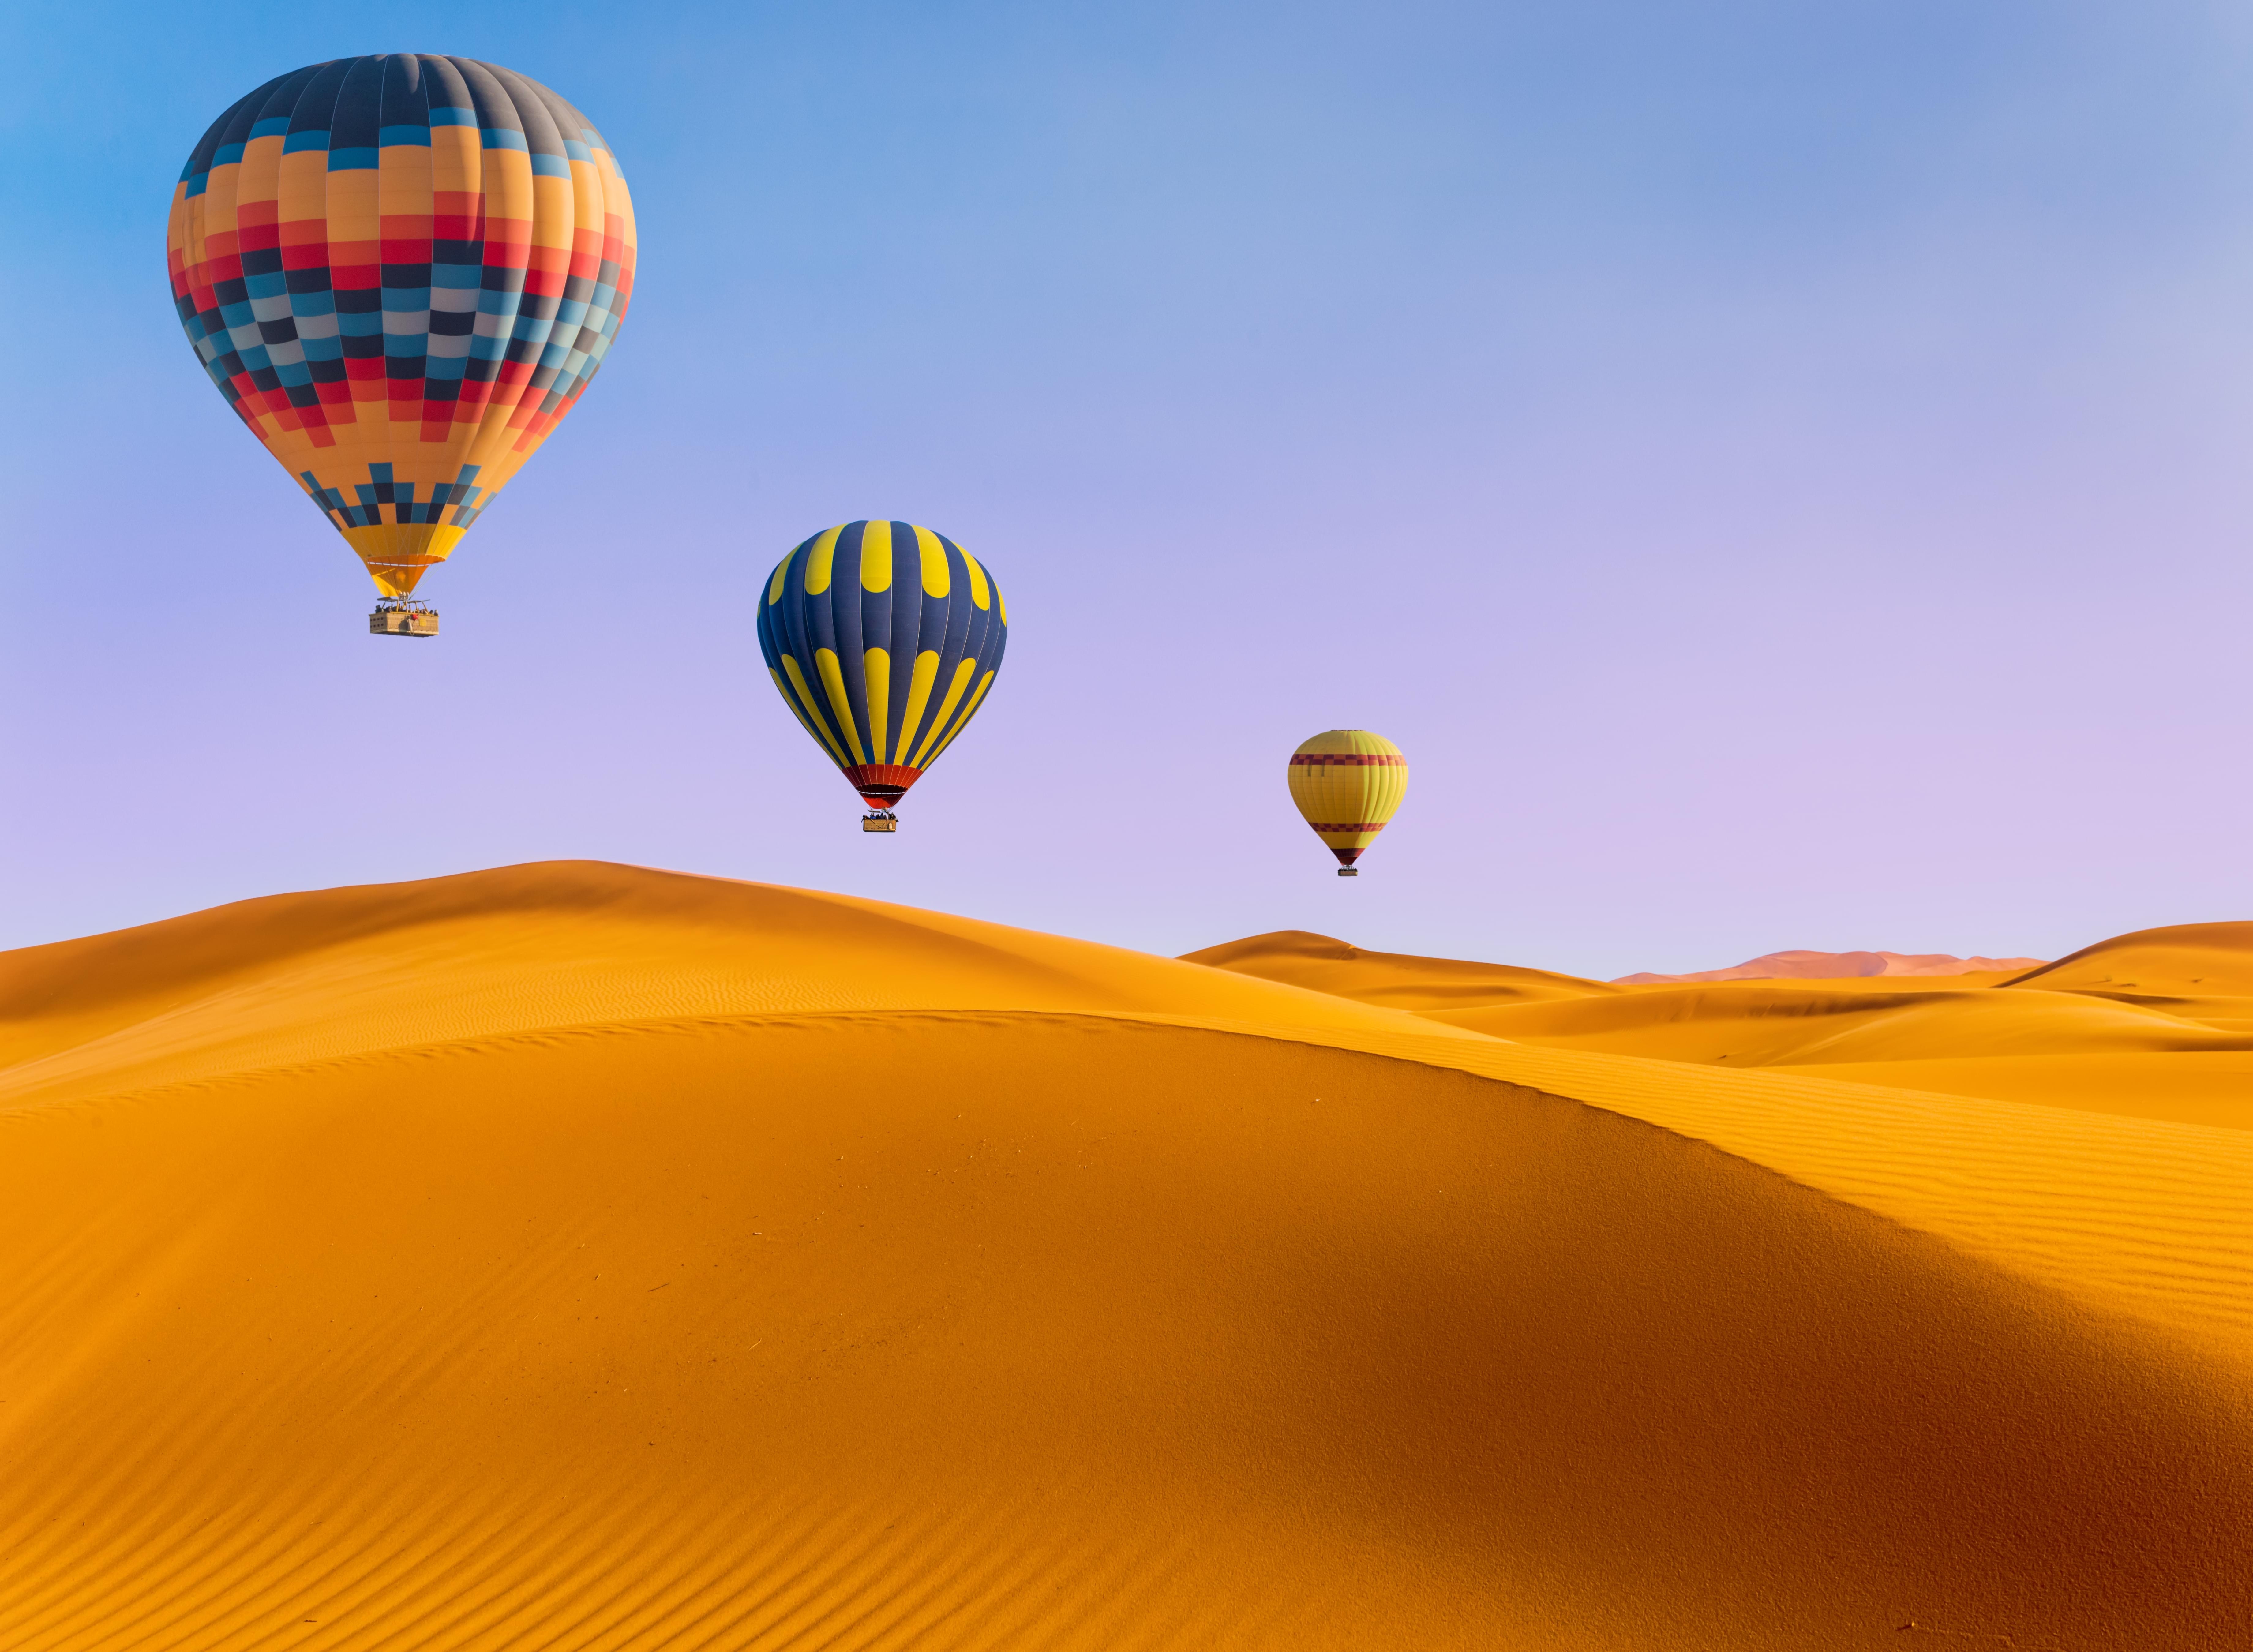 Hot air balloon at Sunrise in Dubai Desert